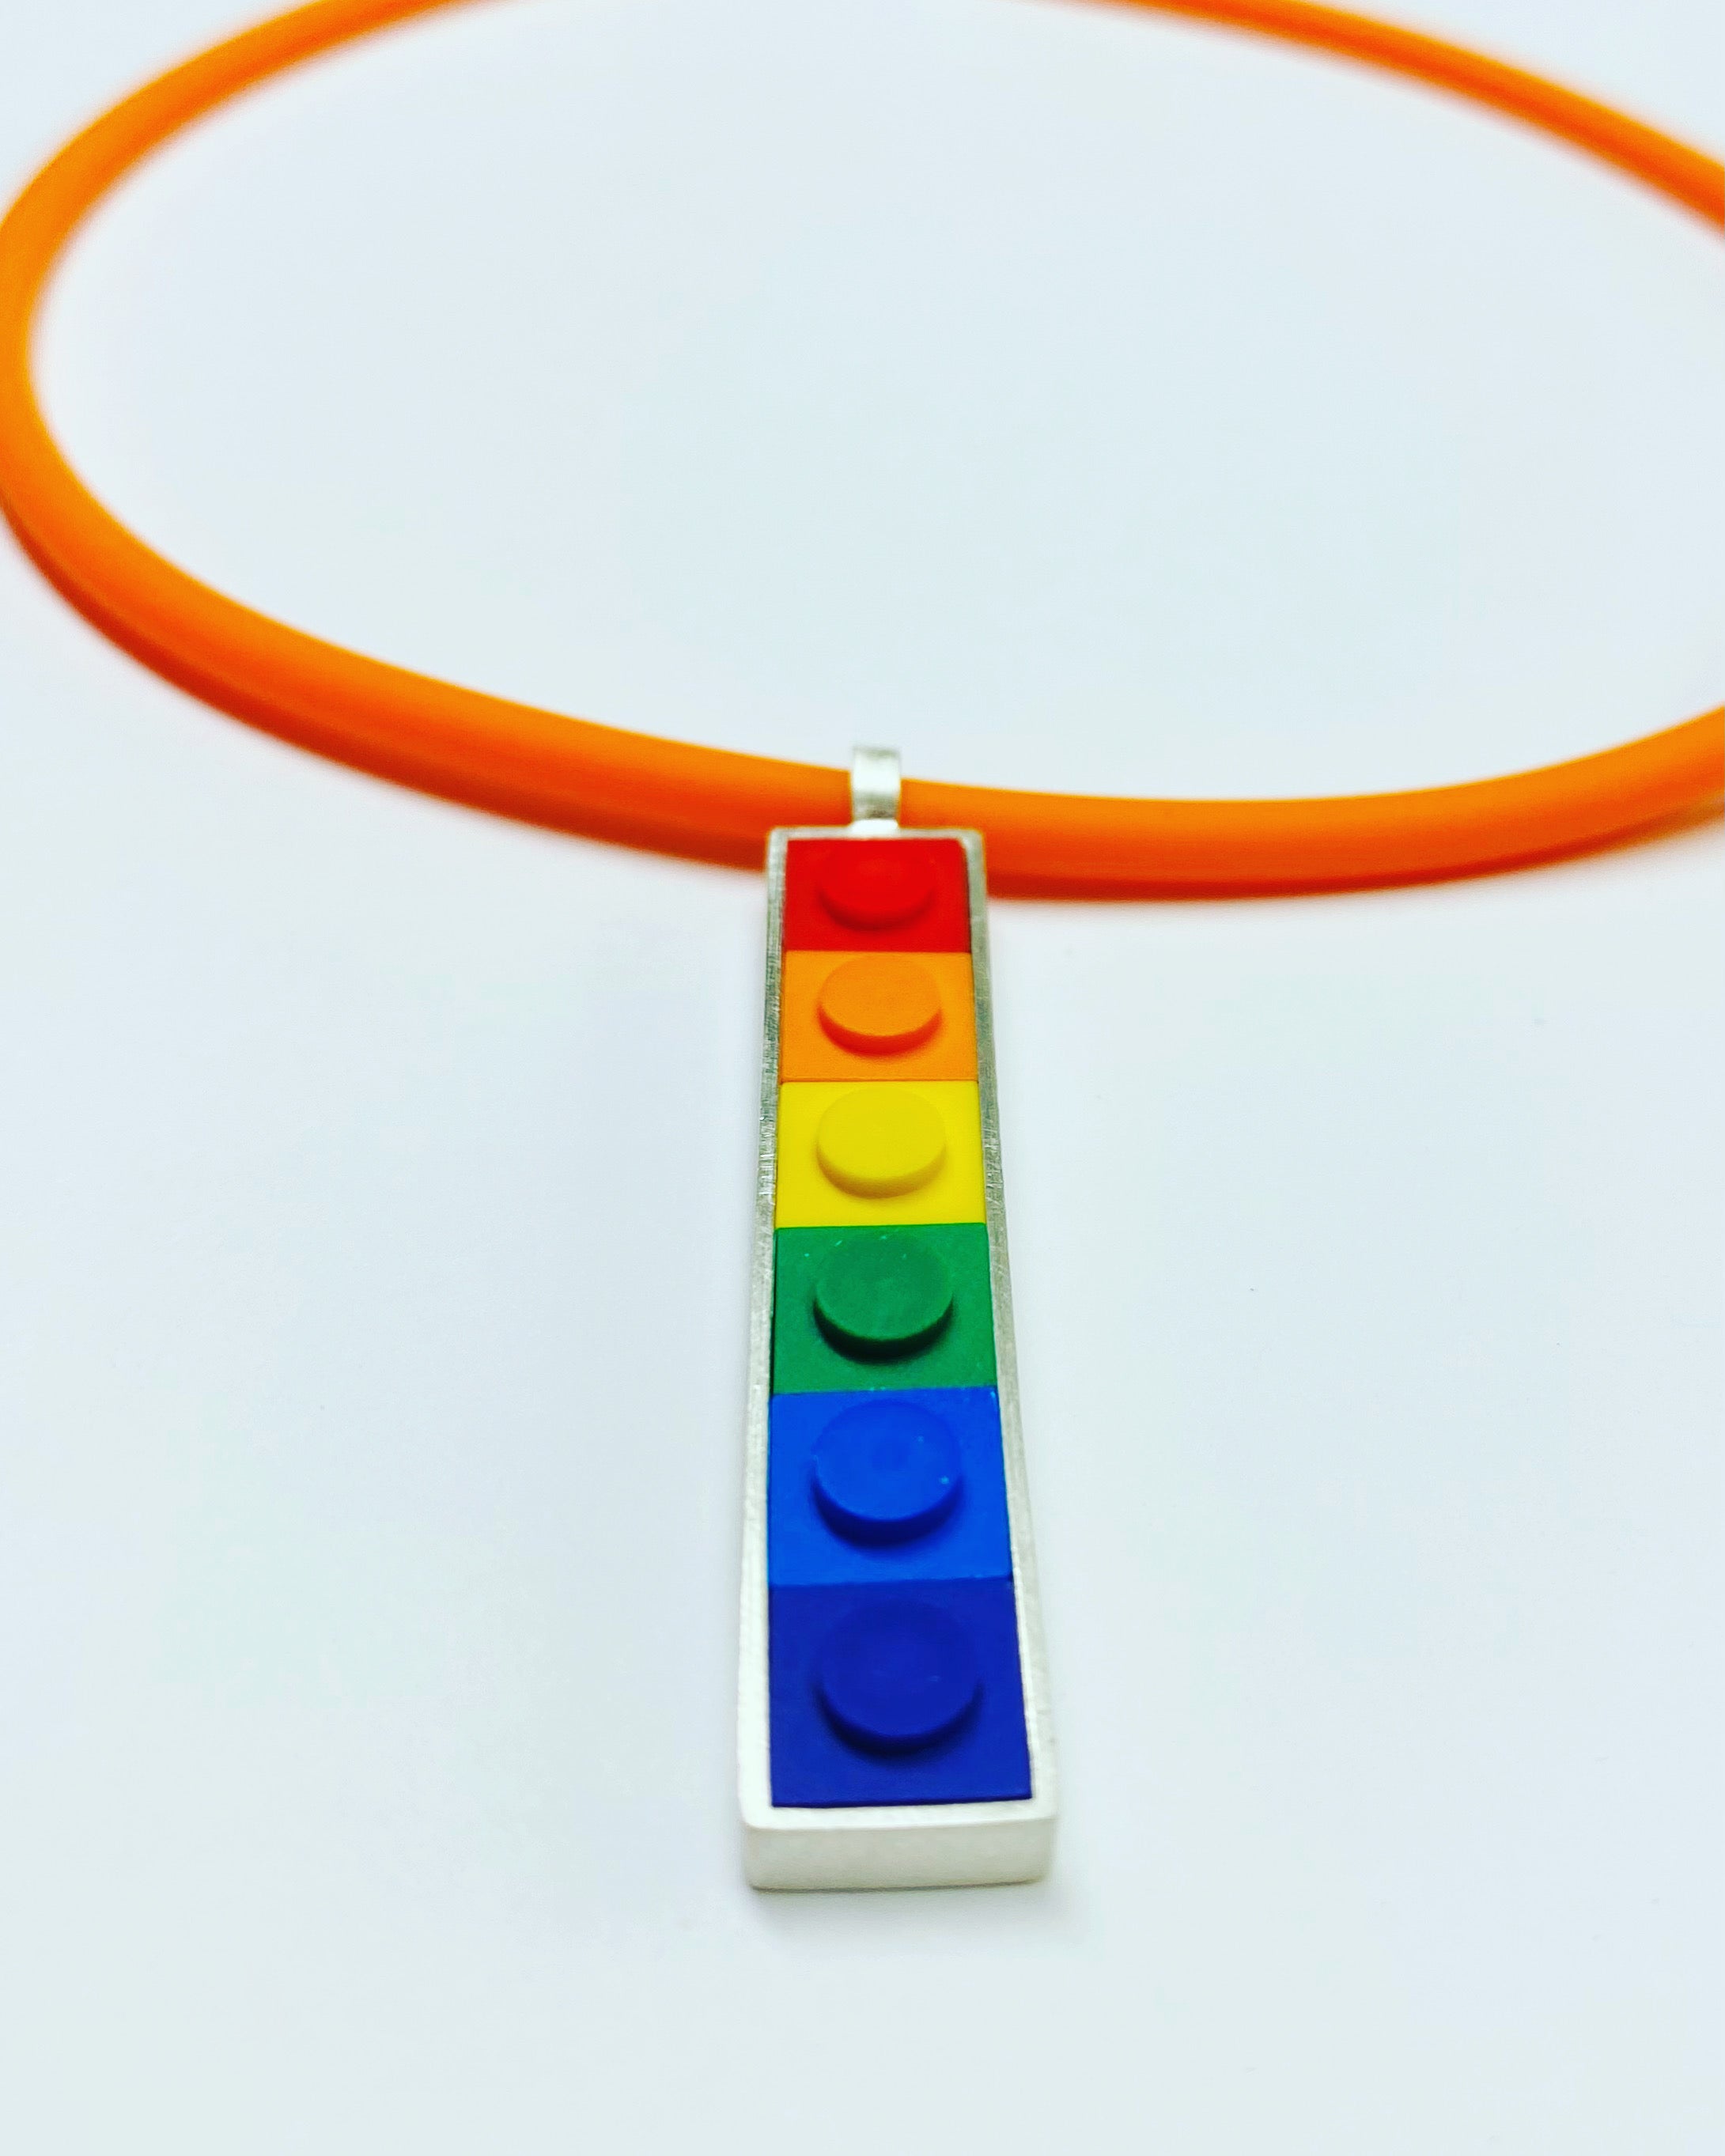 Rainbow Pendant